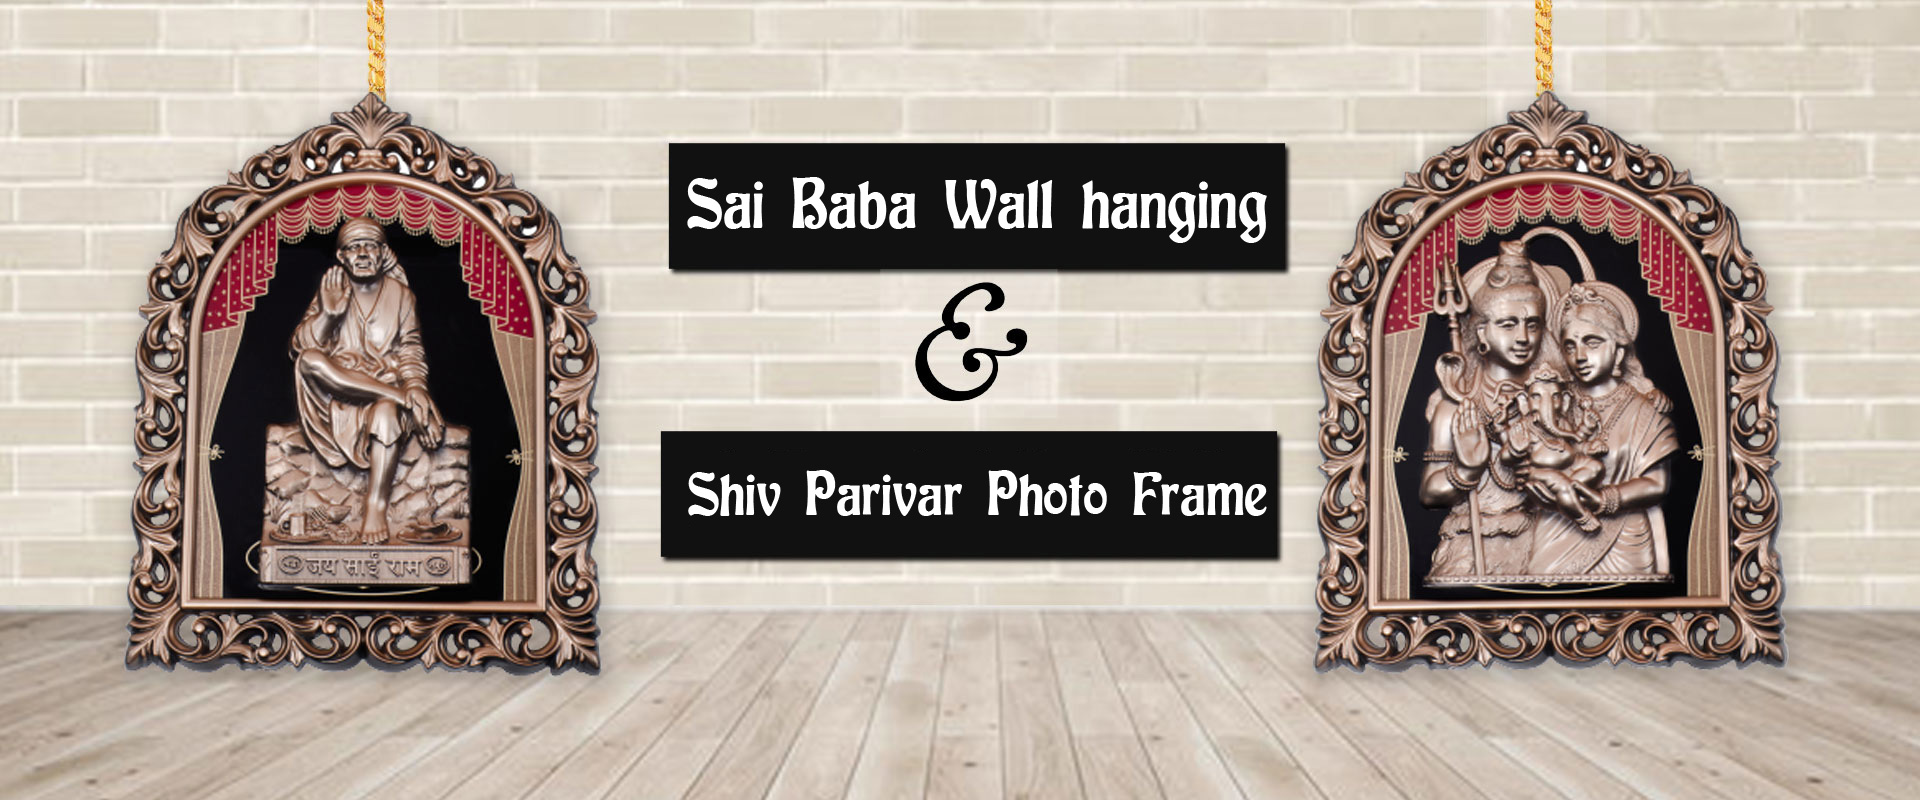 Sai Baba Wall Hanging Manufacturers